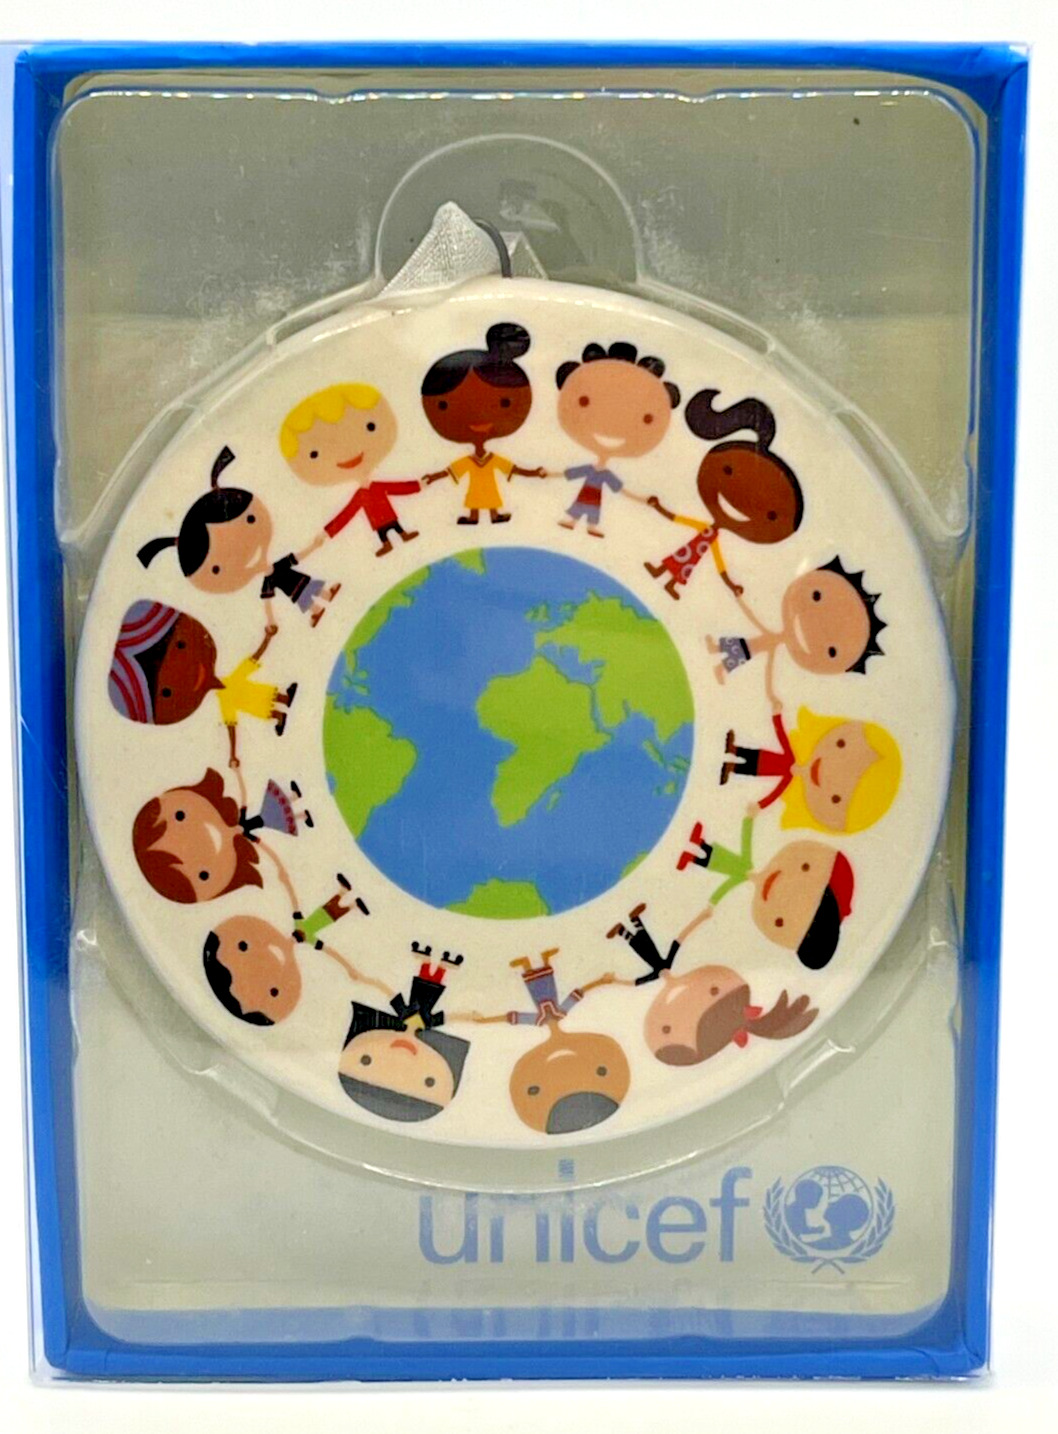 Unicef Kids Around Globe Ceramic Ornament